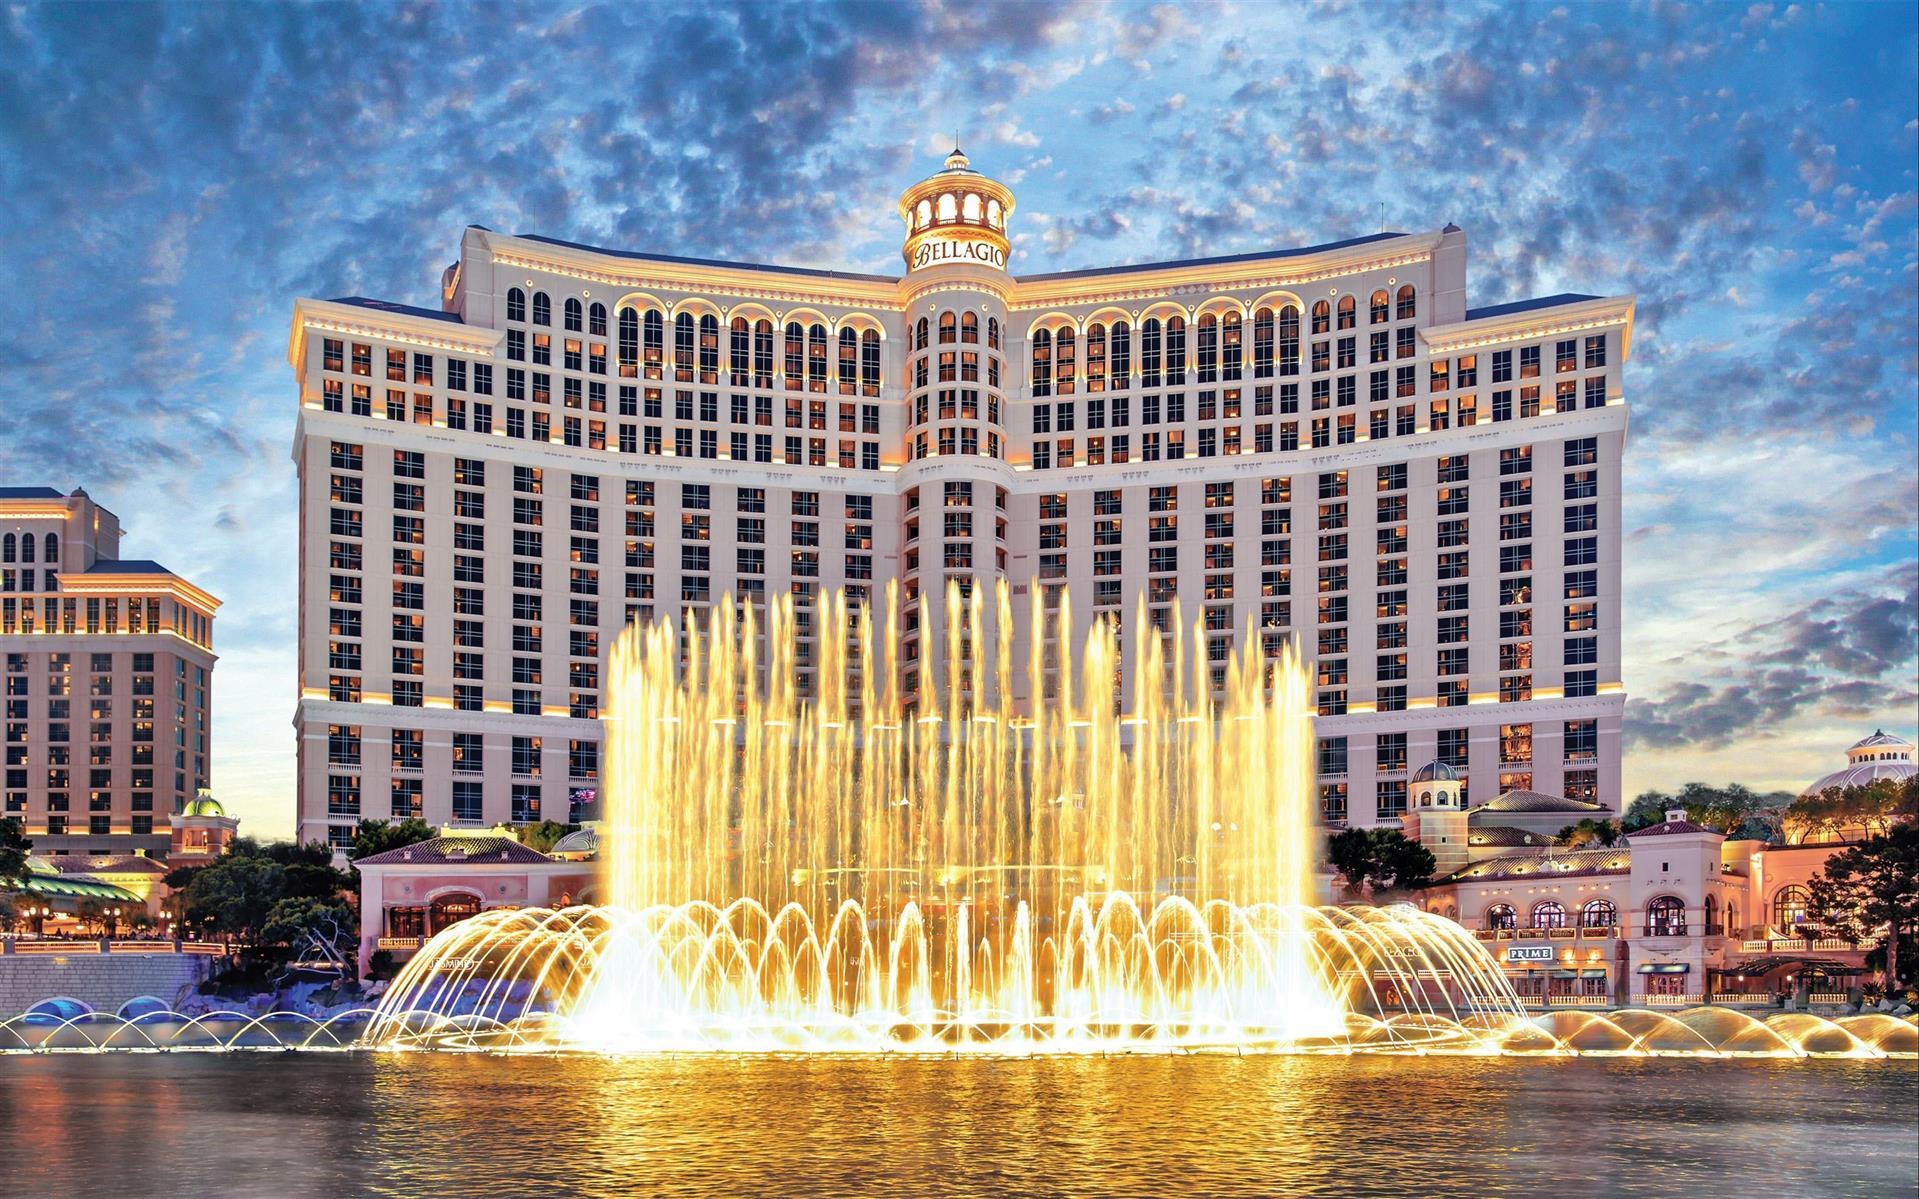 Bellagio Hotel & Casino in Las Vegas, NV